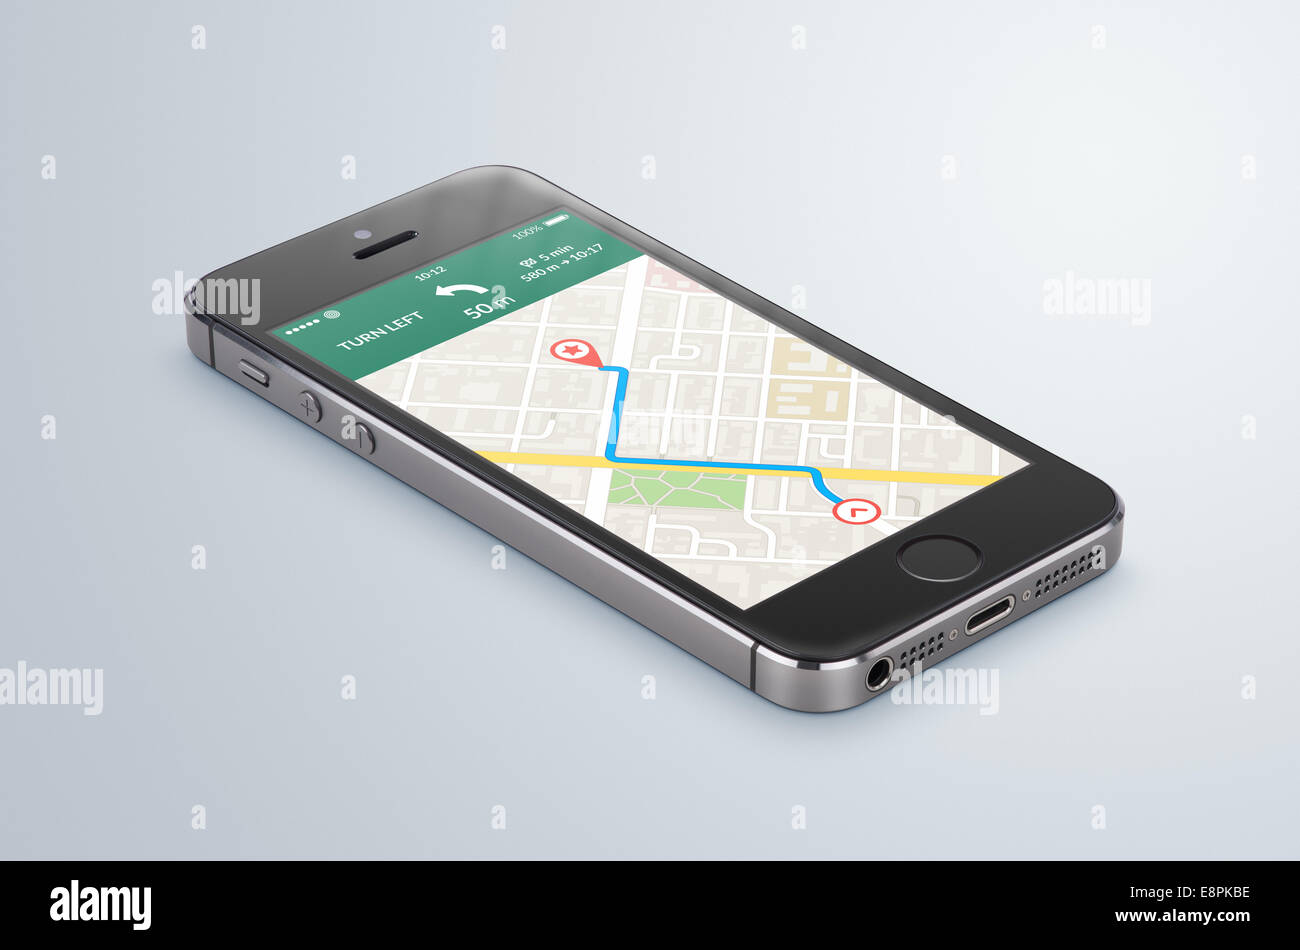 Schwarze moderne Smartphone mit GPS-Navigation Kartenanwendung mit geplanten Route auf dem Bildschirm liegt auf die graue Fläche. Hohe Qualität Stockfoto